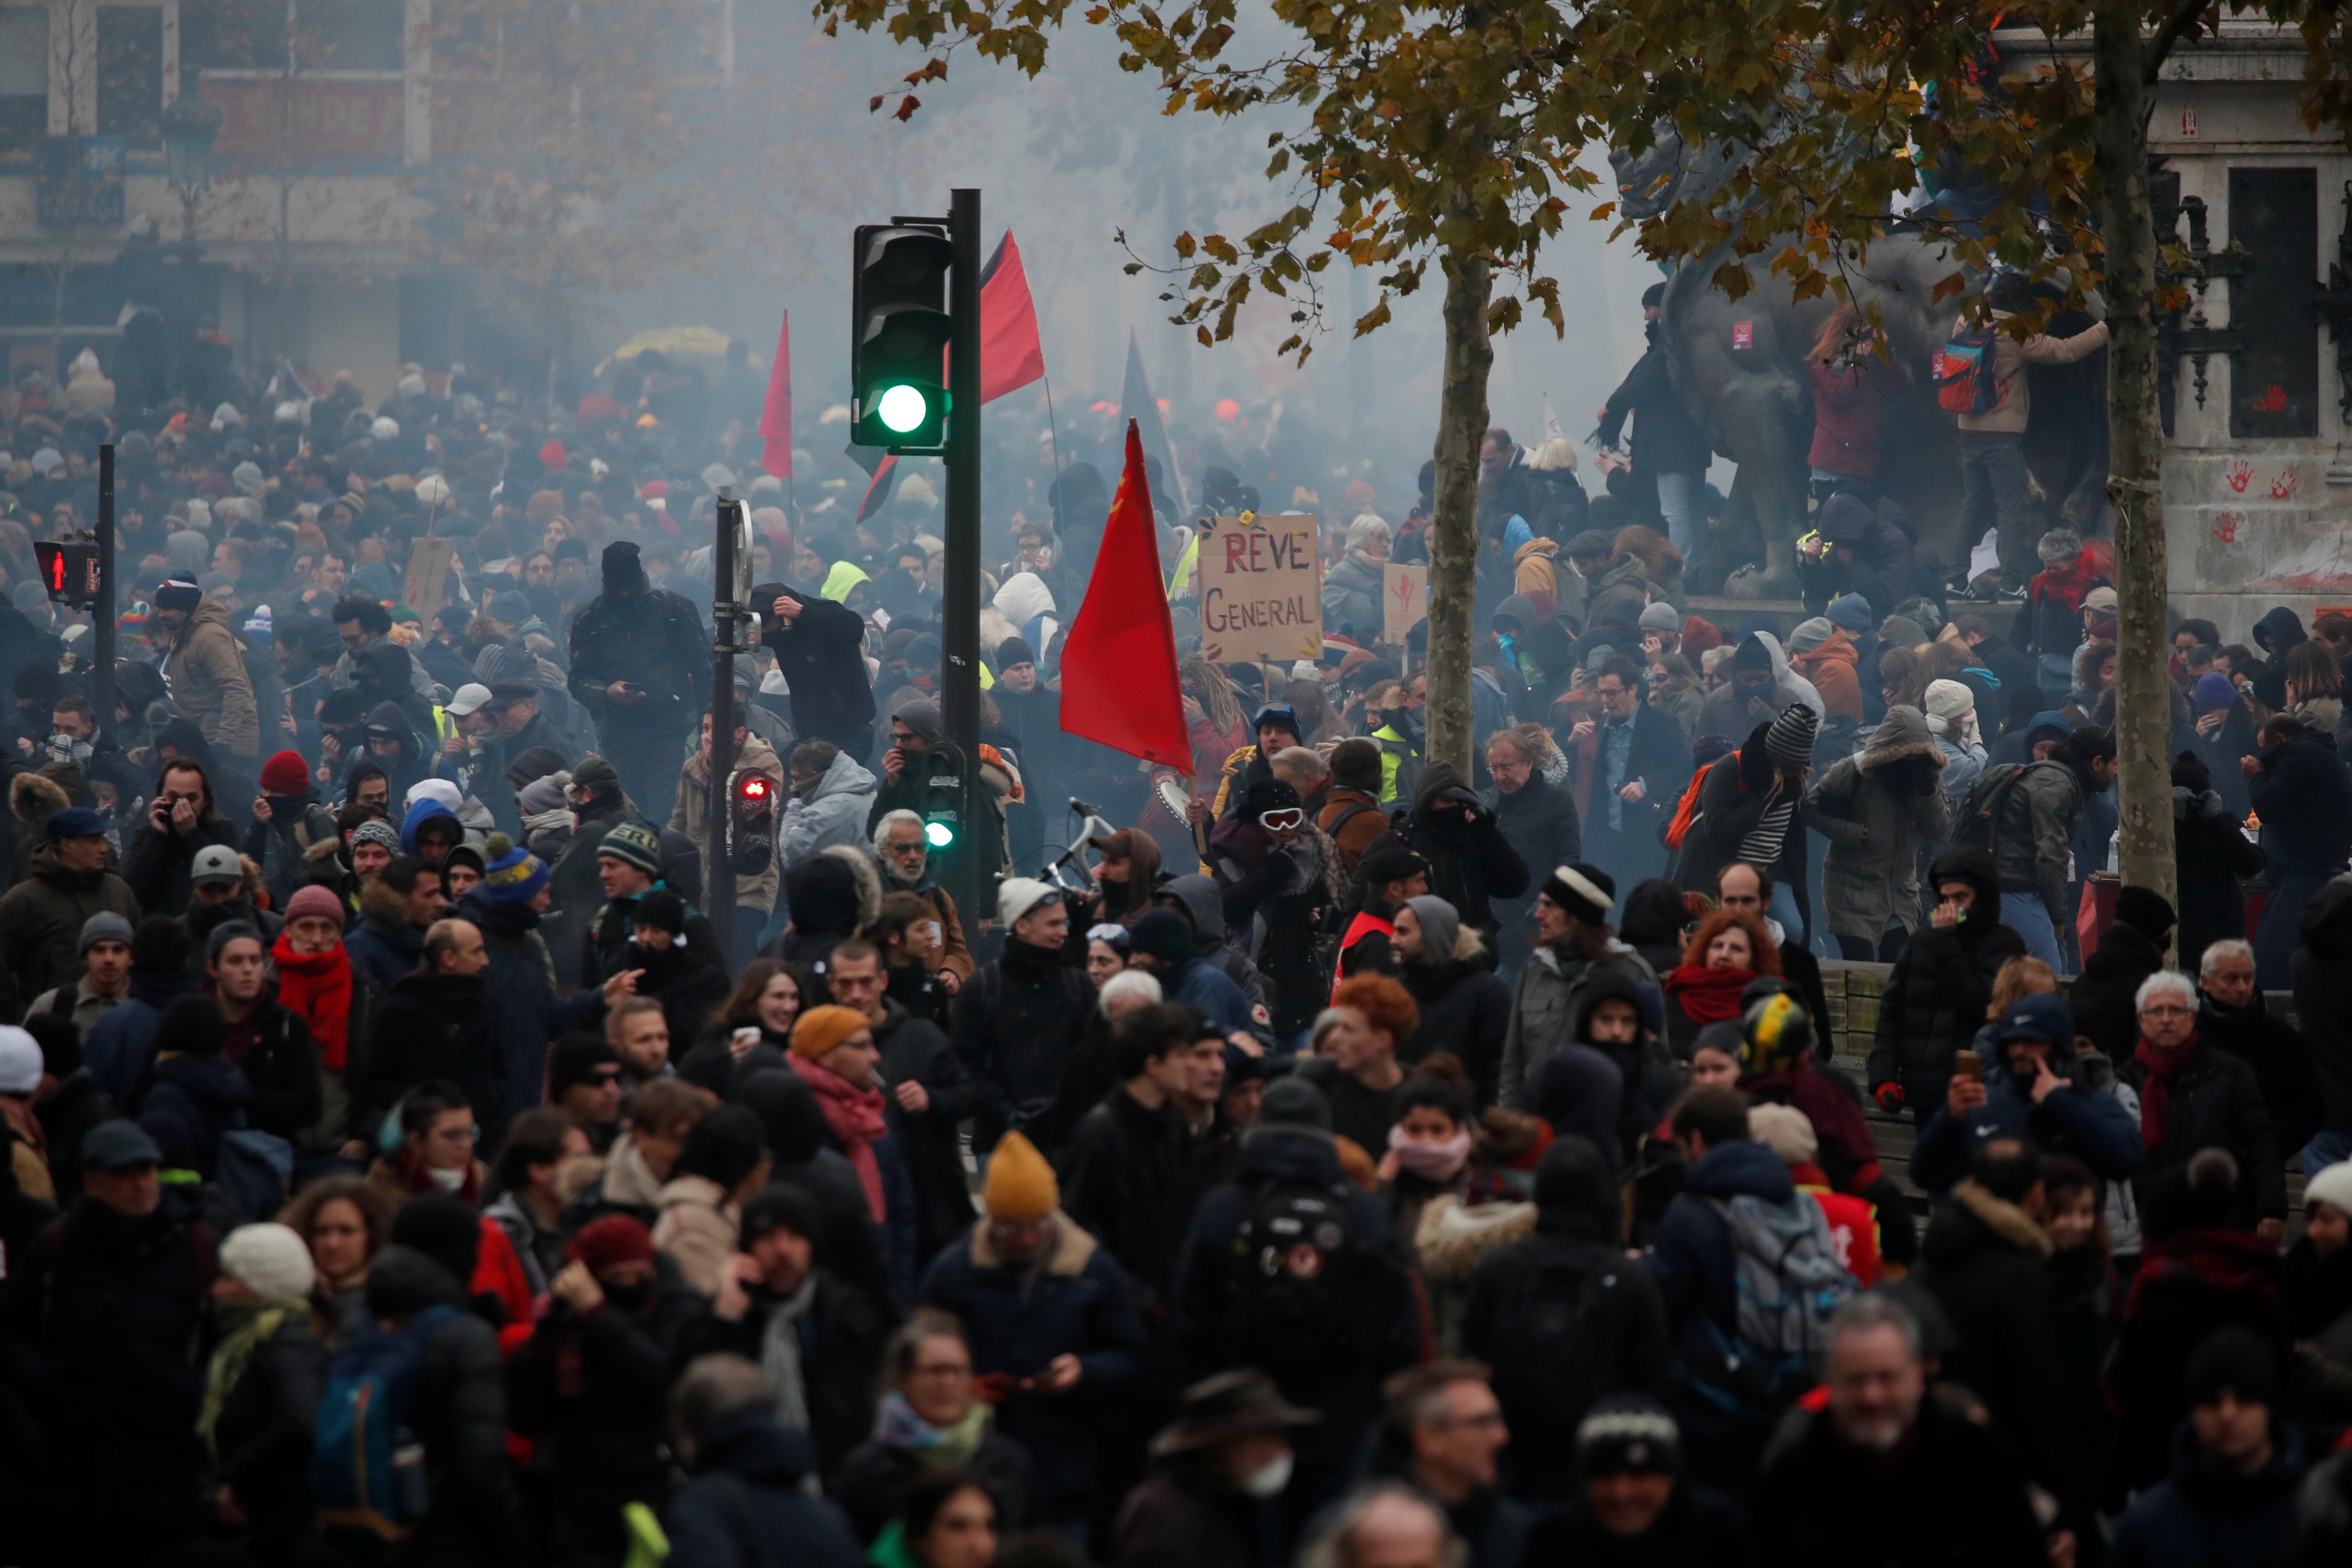 Когда начались волнения. Октябрь 2005 Франция забастовка. Массовые беспорядки во Франции (2005).